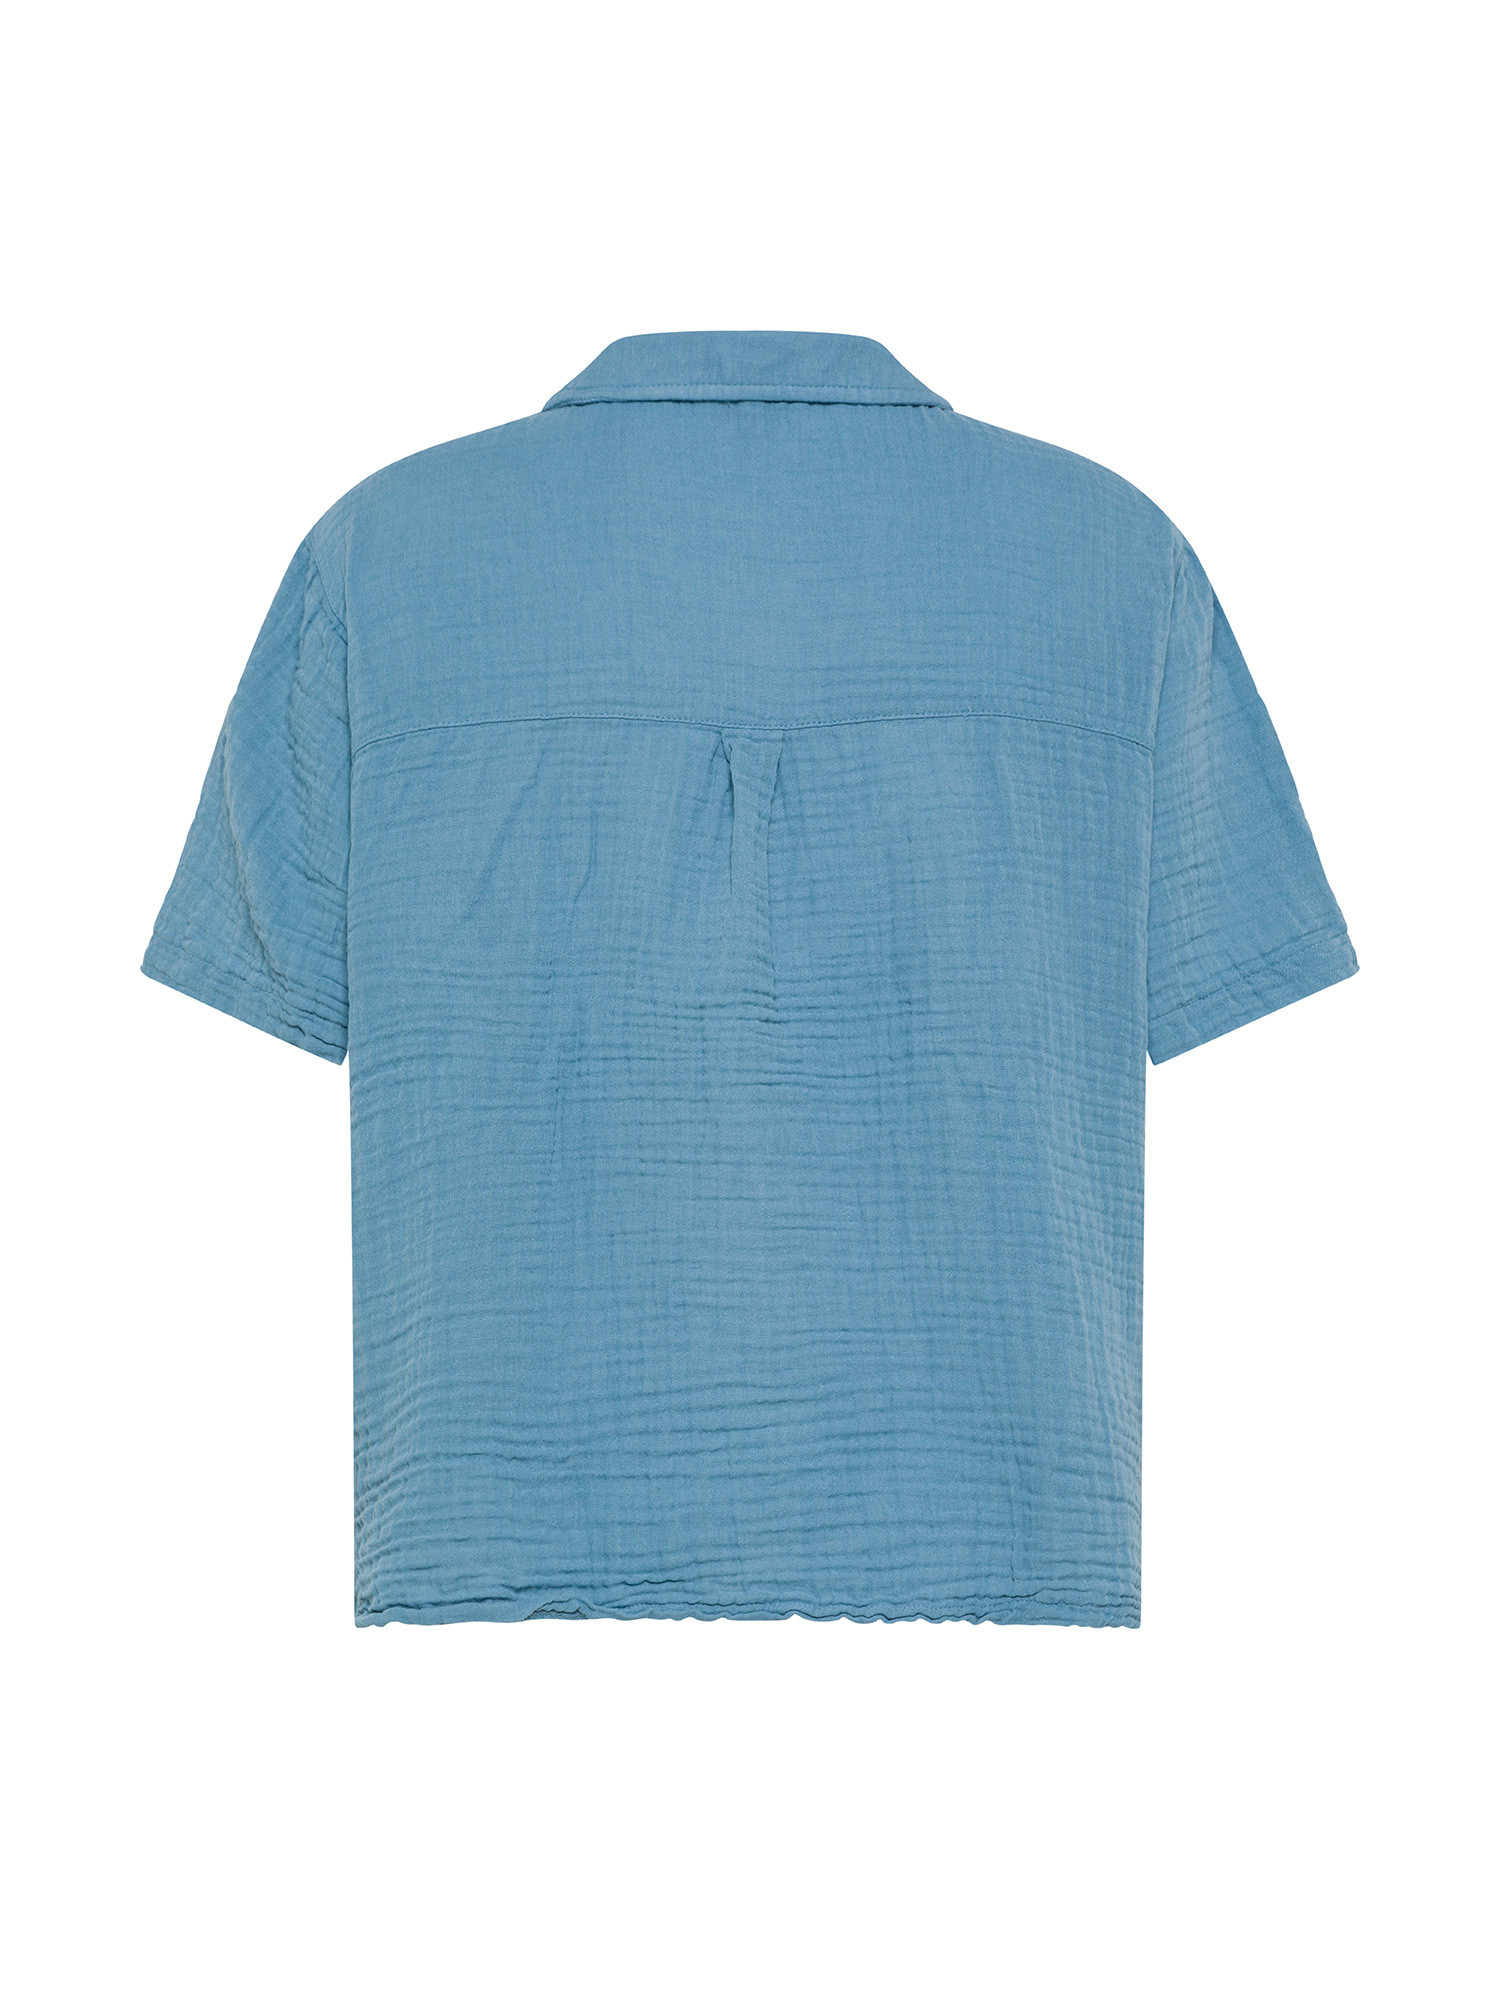 Half-sleeved cotton muslin shirt., Light Blue, large image number 1